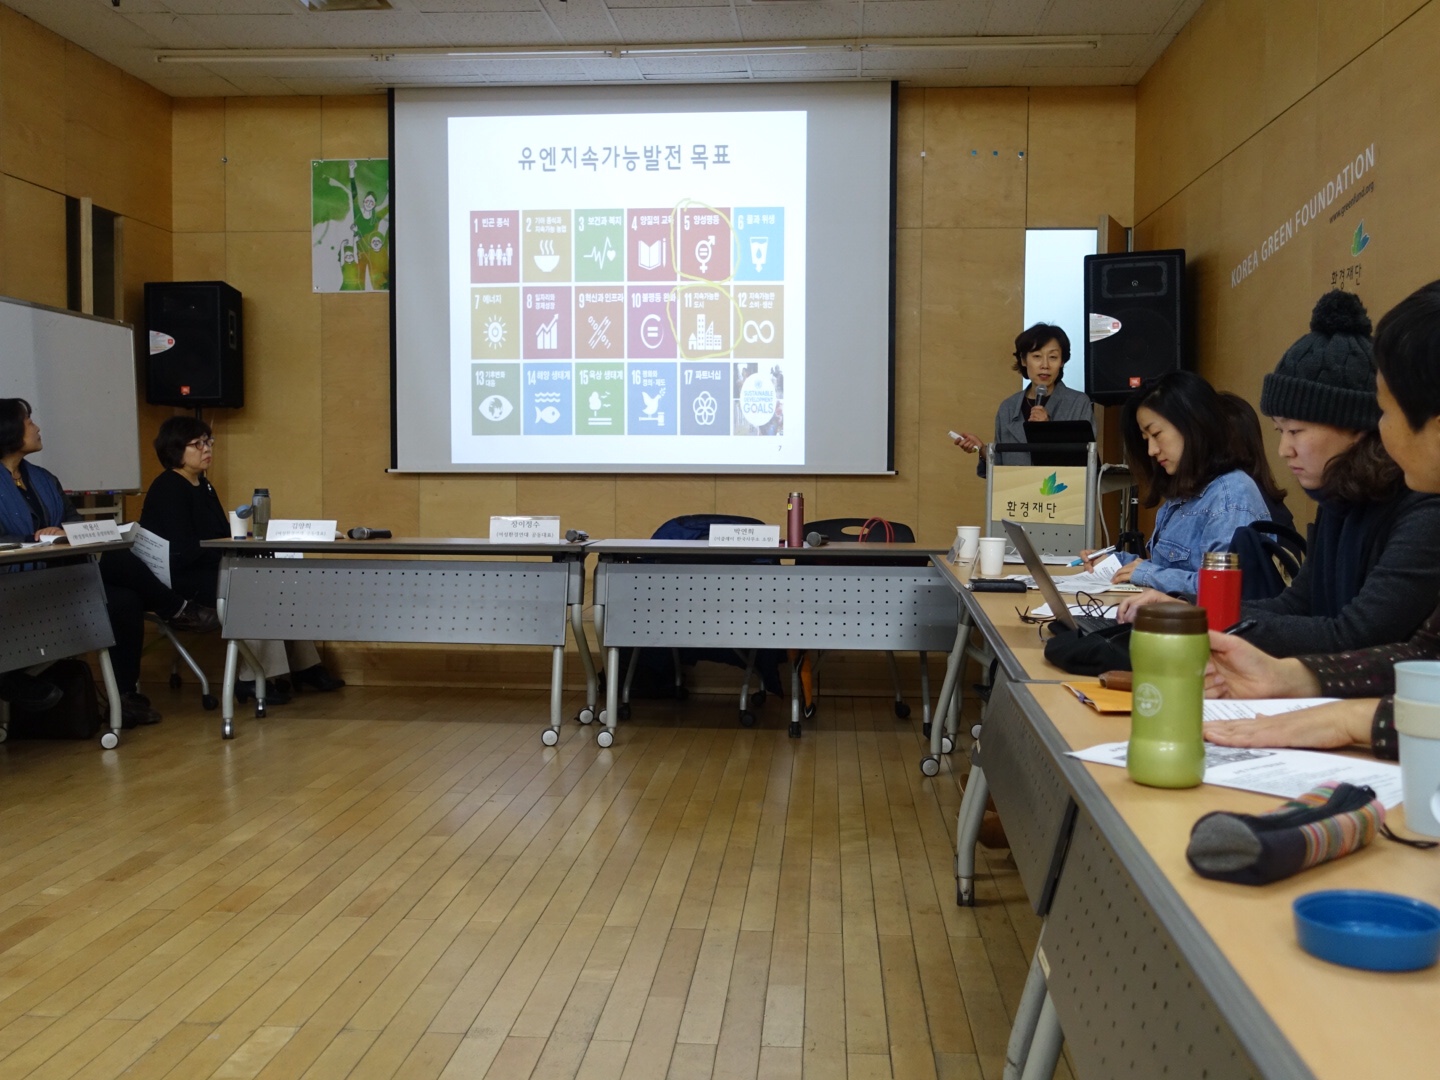 [2015년 상반기] 연구모임 '서울시 지속가능계획 환경정책을 성별영향평가하는 모임'의 정책건의 보고서 입니다.